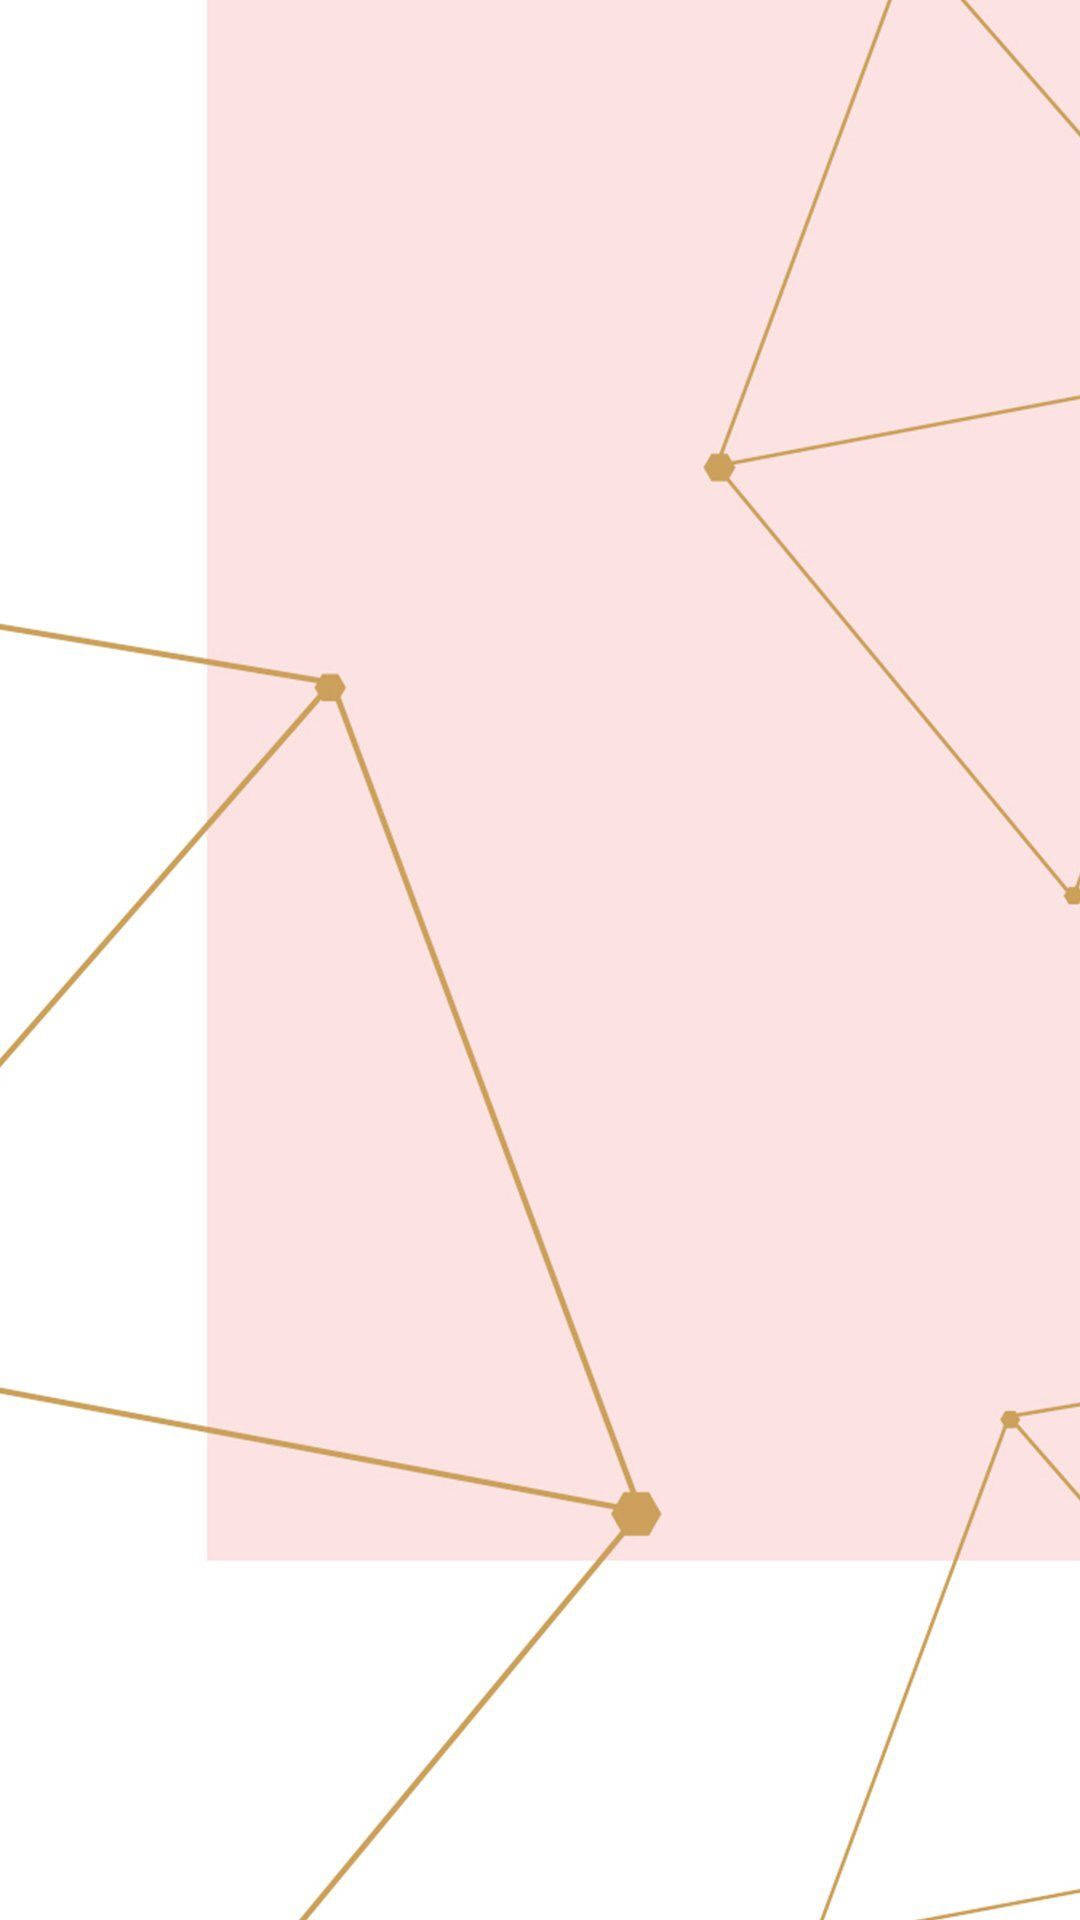 Verbessernsie Ihren Stil Mit Dem Beeindruckenden Pastellrosa Iphone Wallpaper